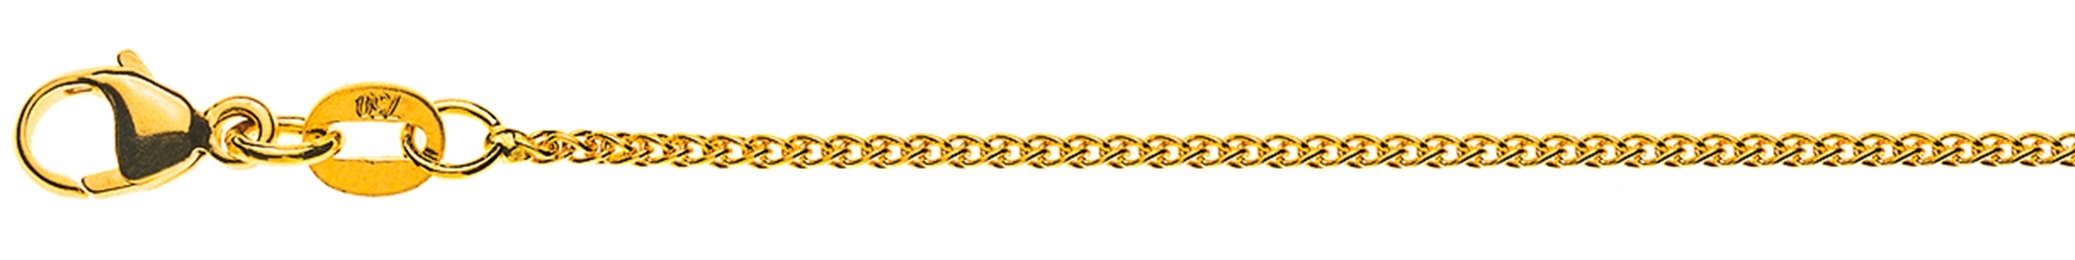 AURONOS Élégance Necklace yellow gold 14K cable chain 60cm 1.2mm